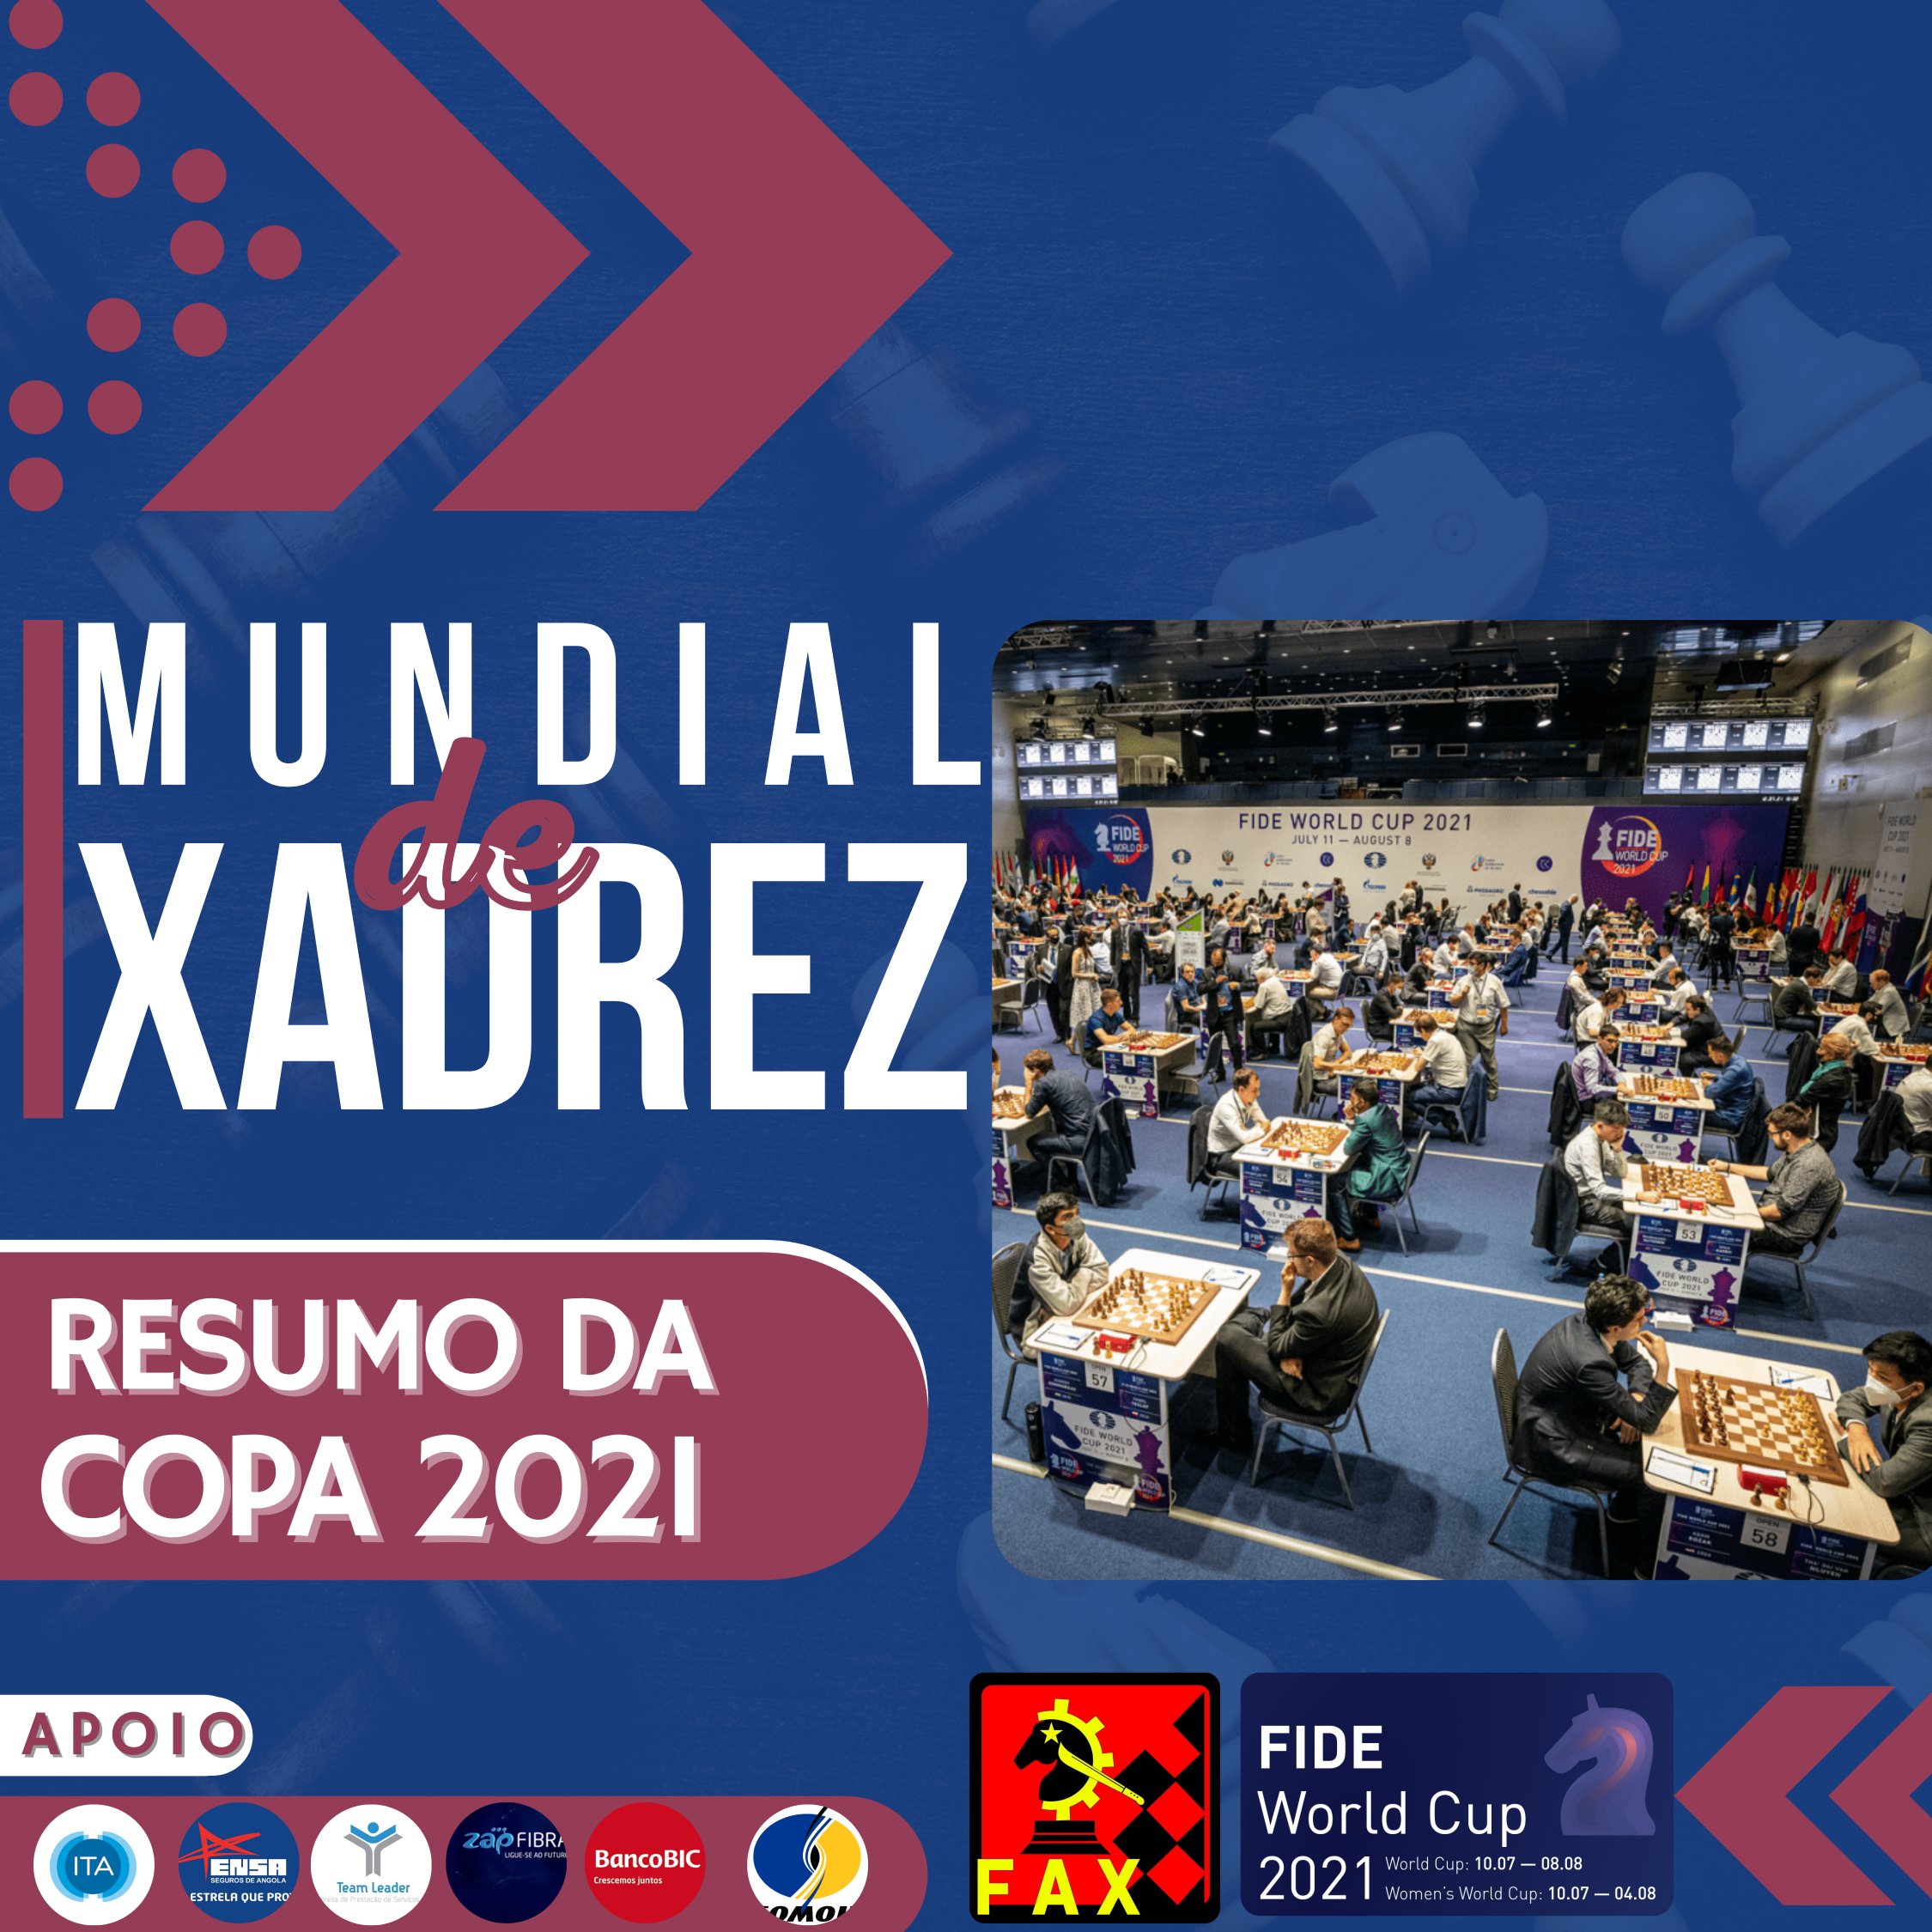 Jornal de Angola - Notícias - Empates marcam segunda jornada do Nacional de  Xadrez